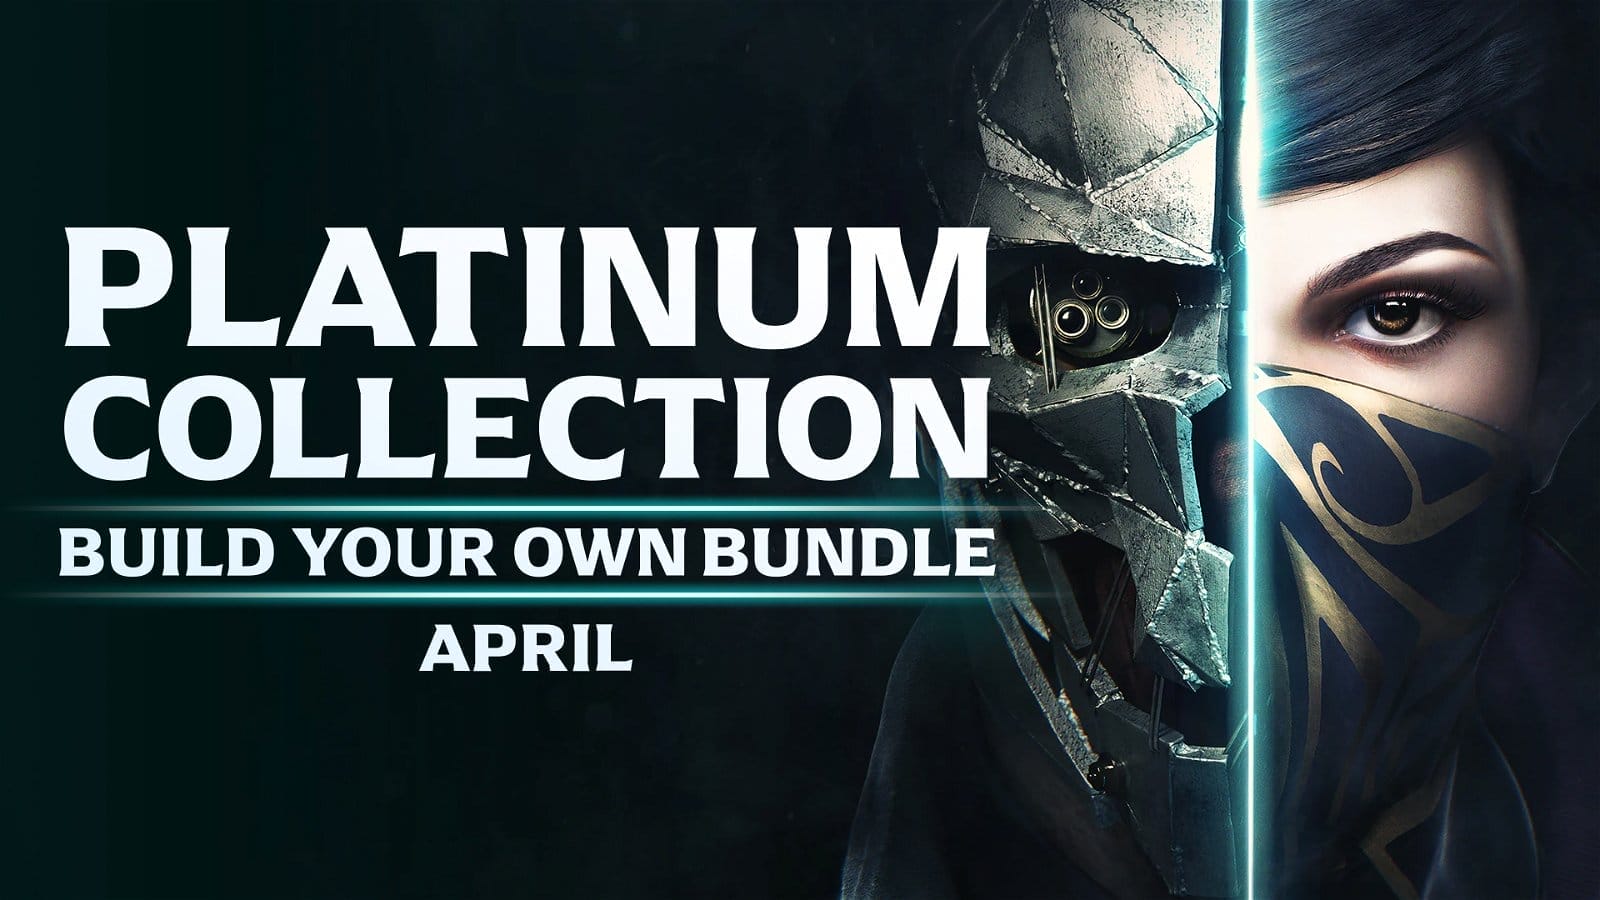 Platinum Collection Build Your Own Bundle: April